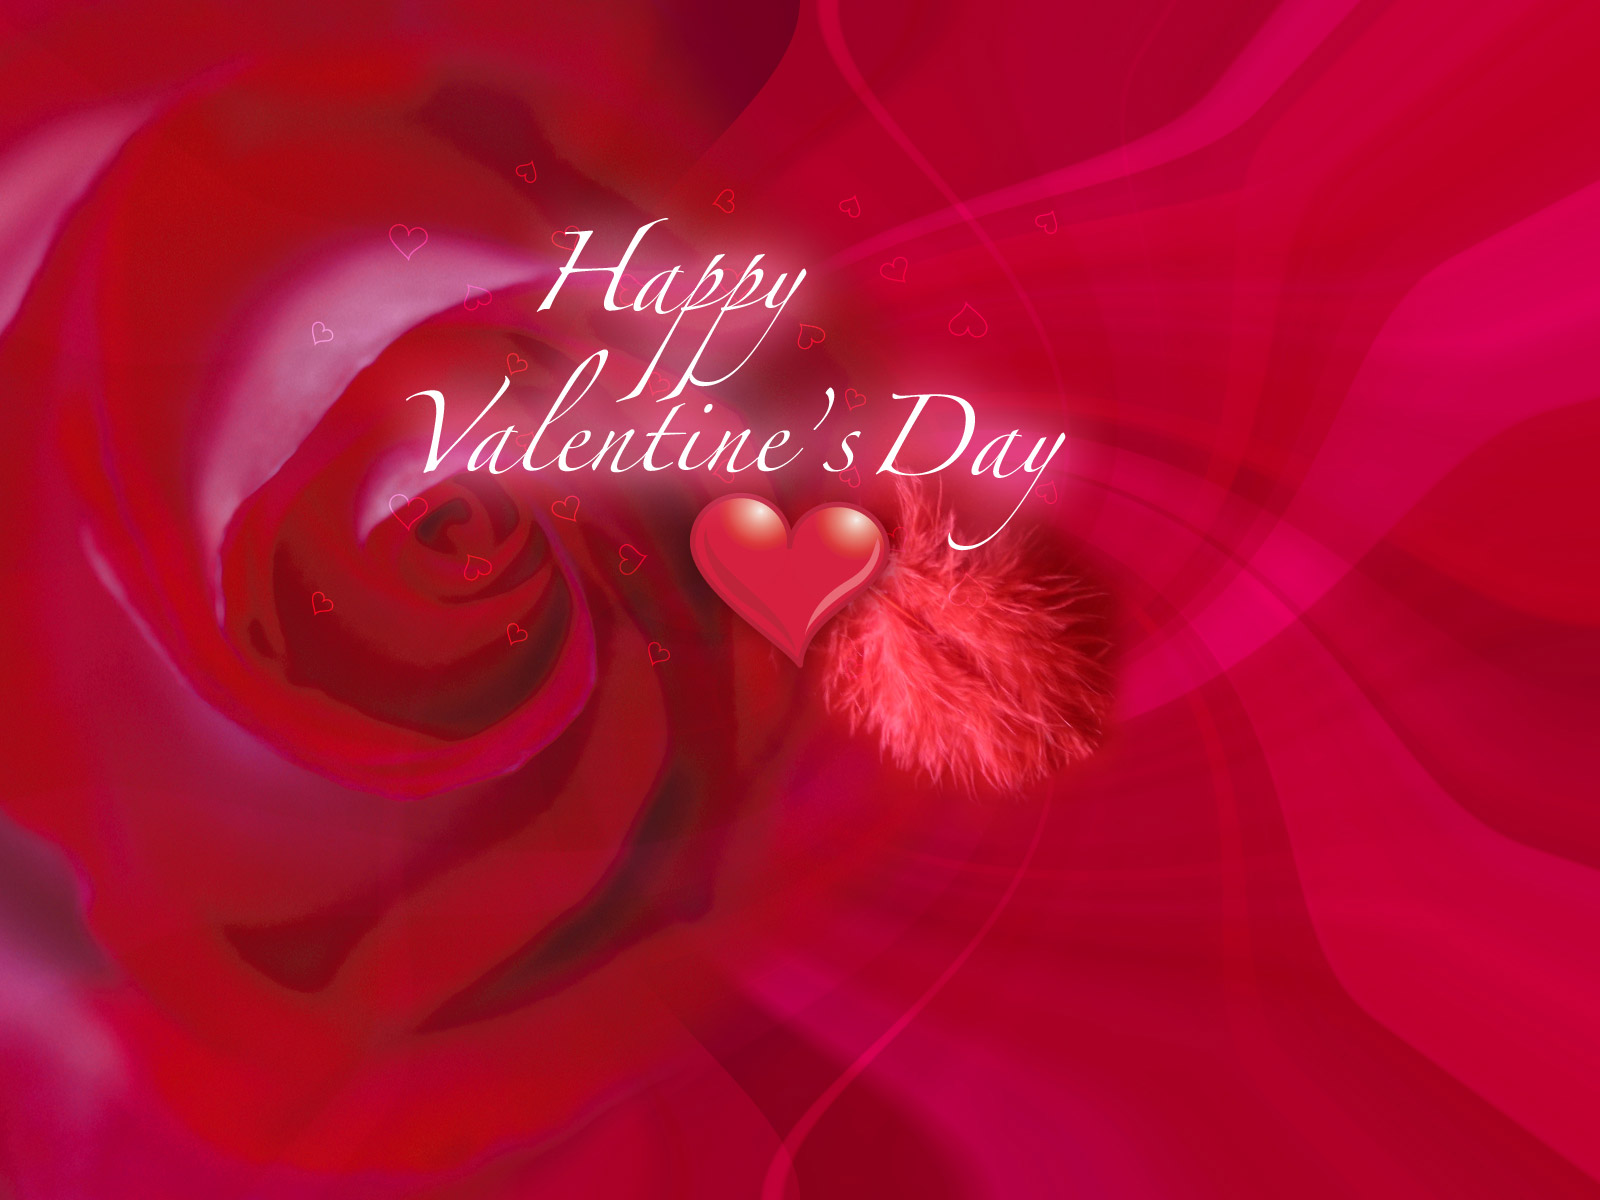 http://4.bp.blogspot.com/-v9rIGnY4_tA/Ty2g4KYEWvI/AAAAAAAAGWQ/kNTjv4S_YvI/s1600/Valentine%2527s%2BDay%2B3.jpg